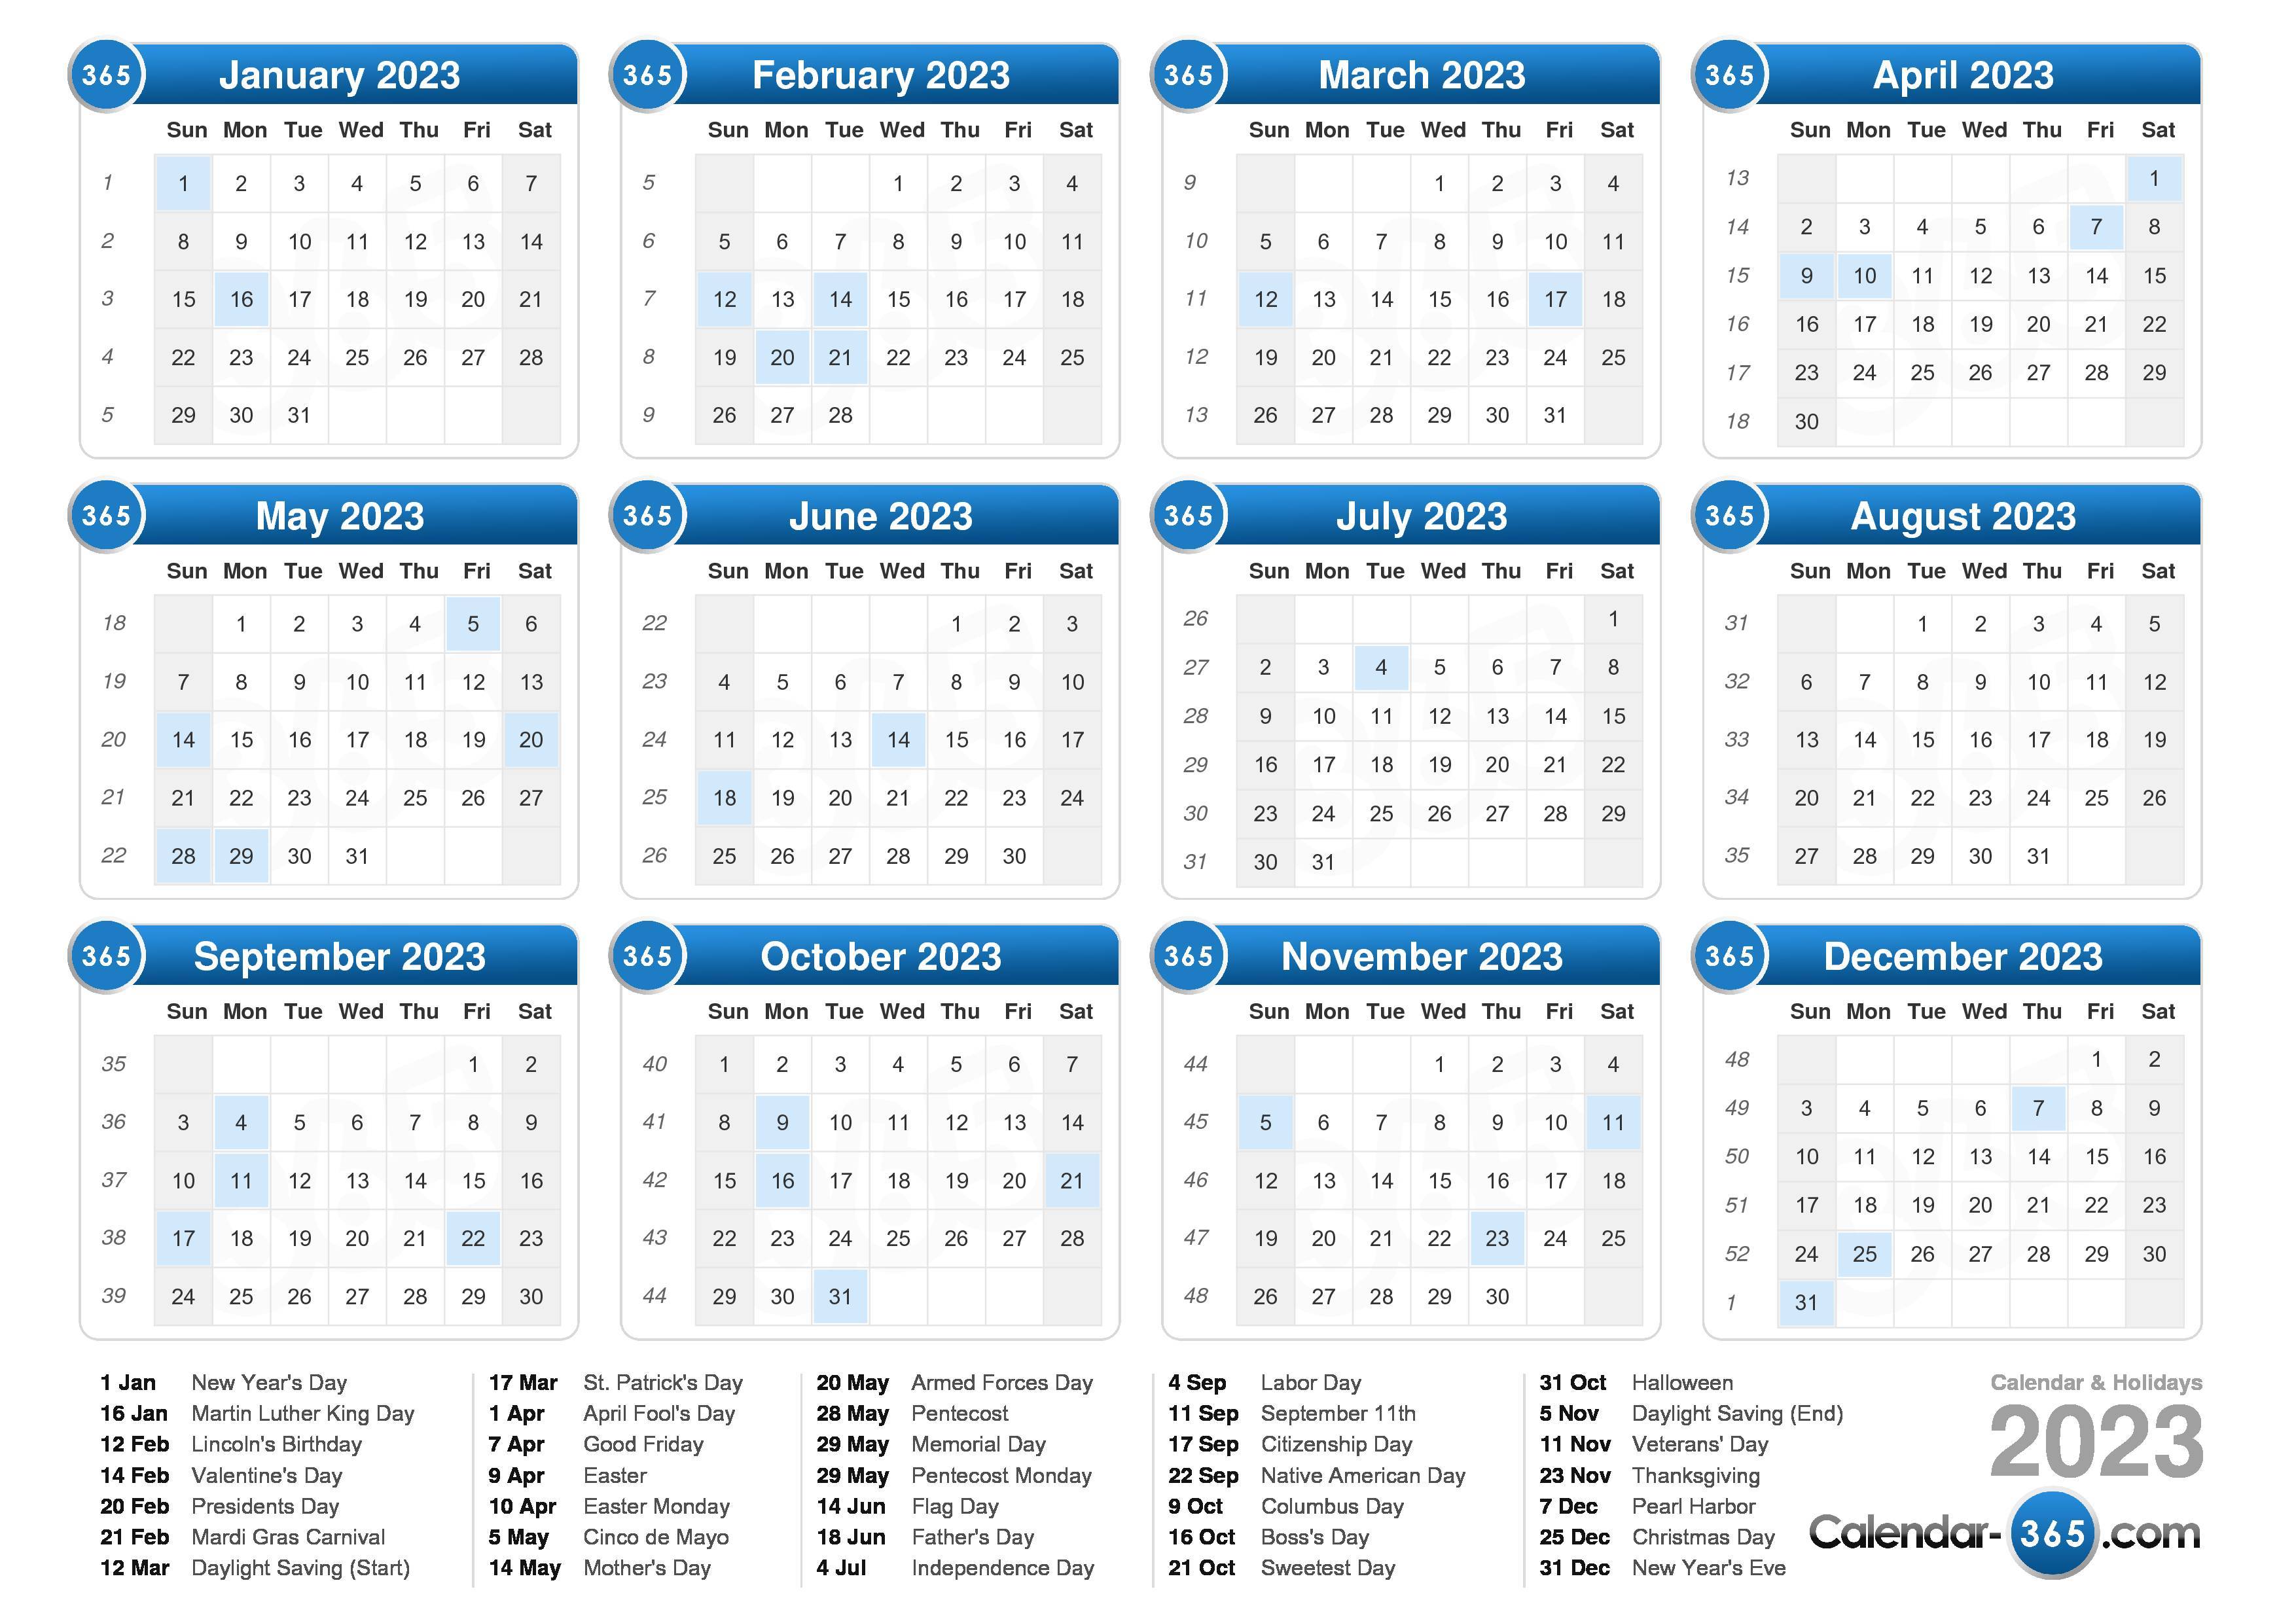 calendar-2023-by-week-get-latest-news-2023-update